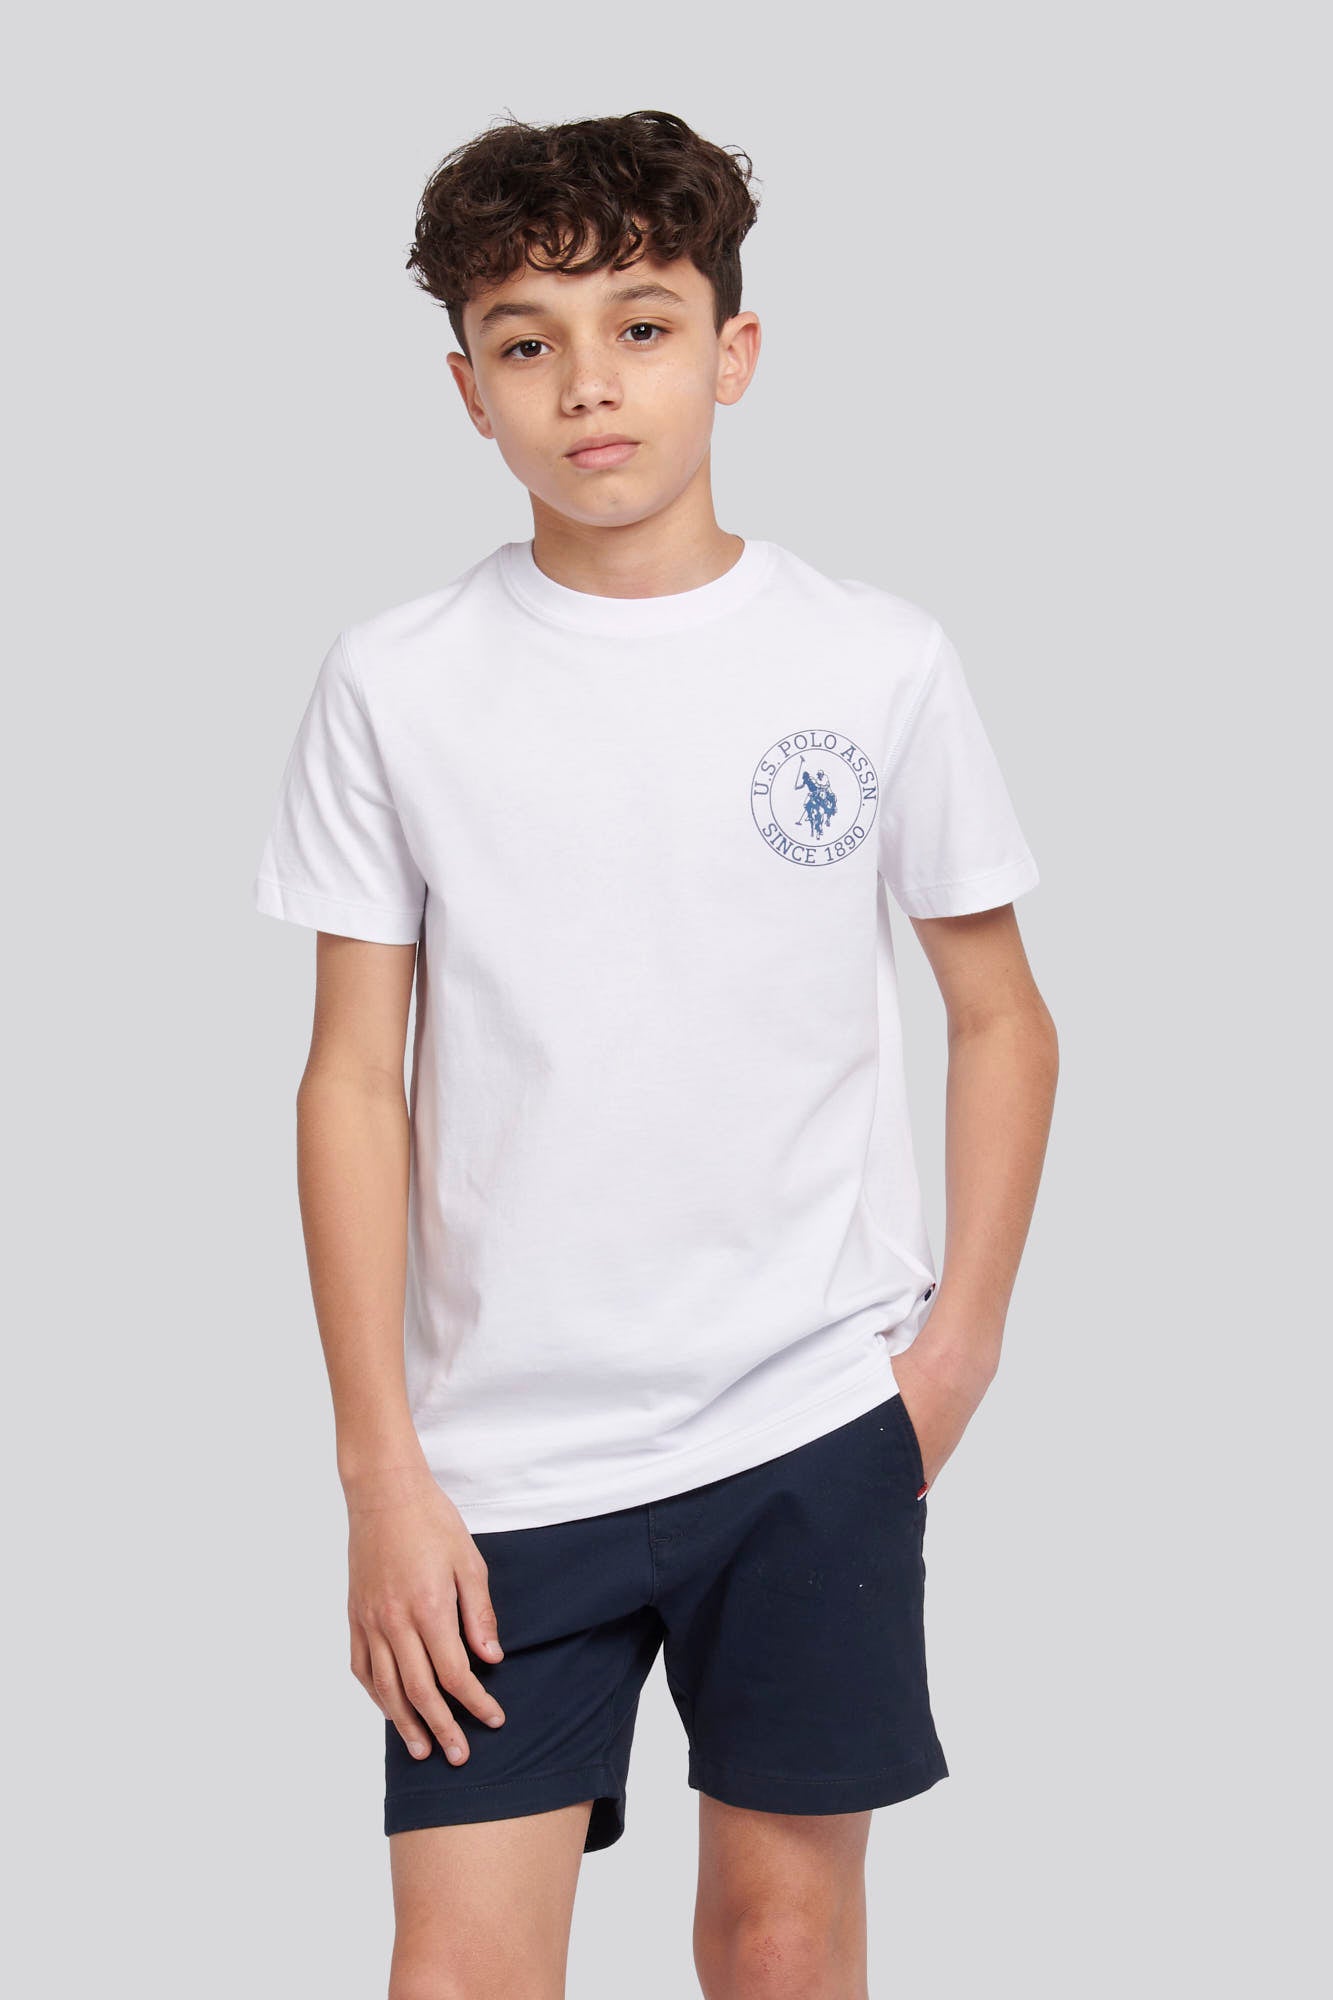 U.S. Polo Assn. Boys Circle Print T-Shirt in Bright White